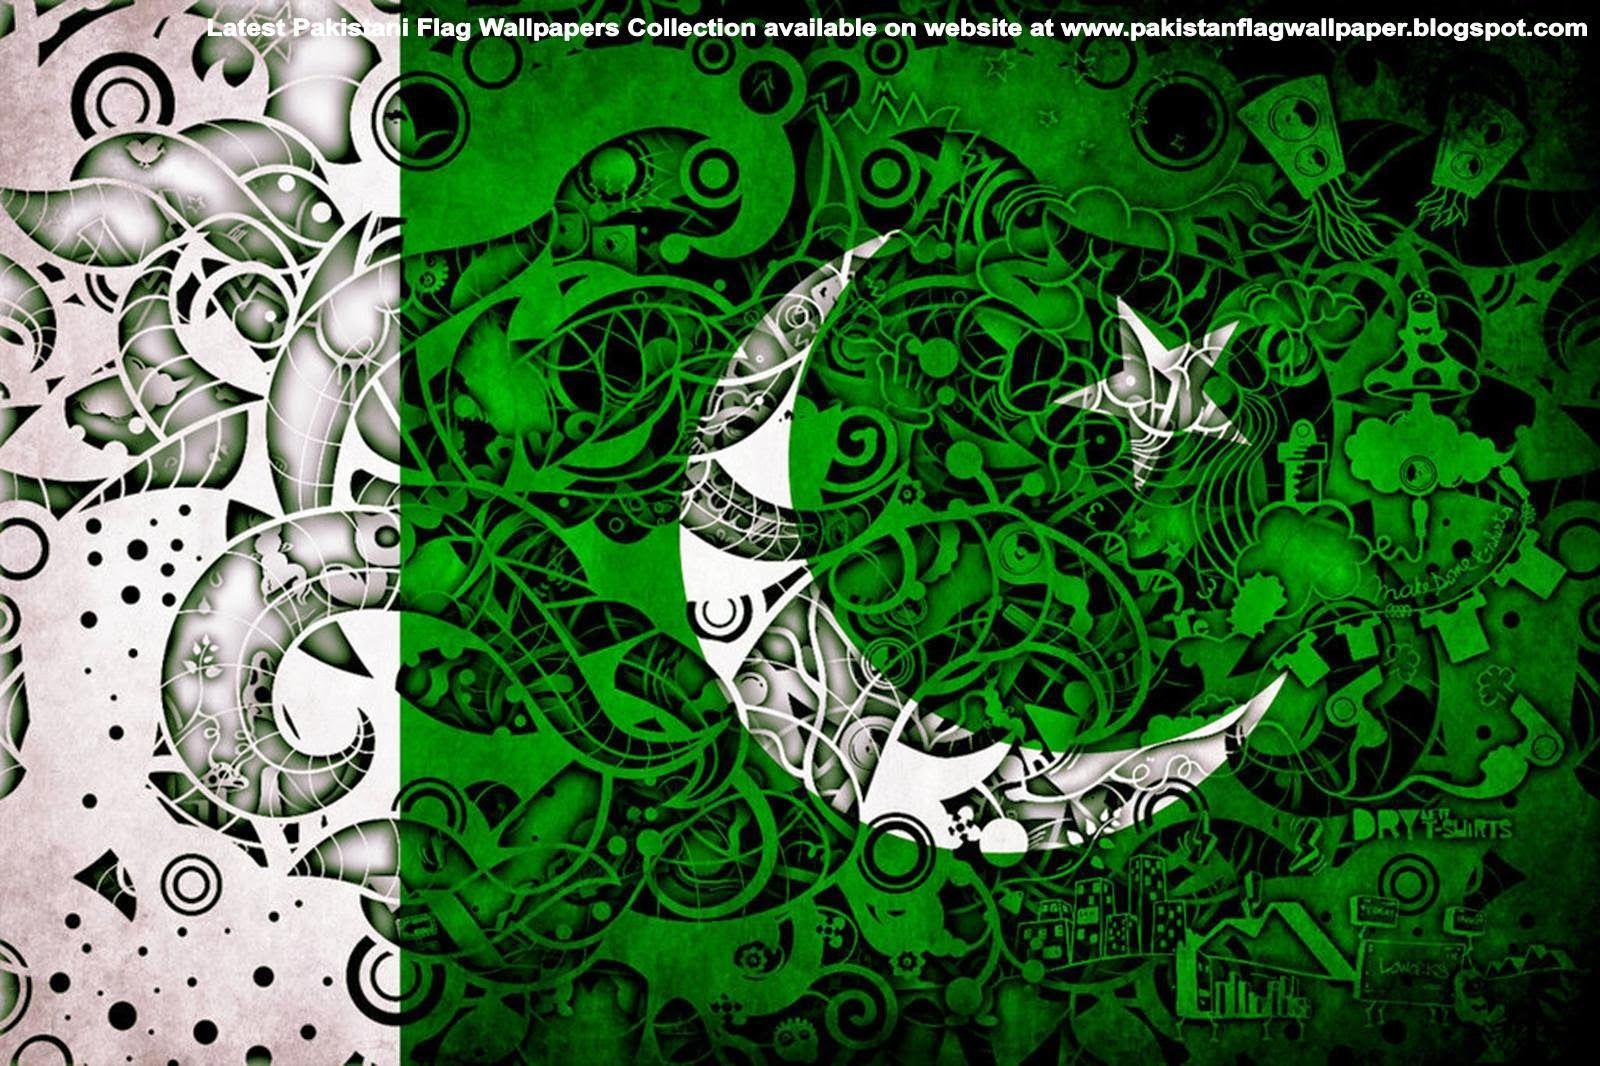 Pakistan Flag Wallpaper: Pakistan Flag Wallpaper